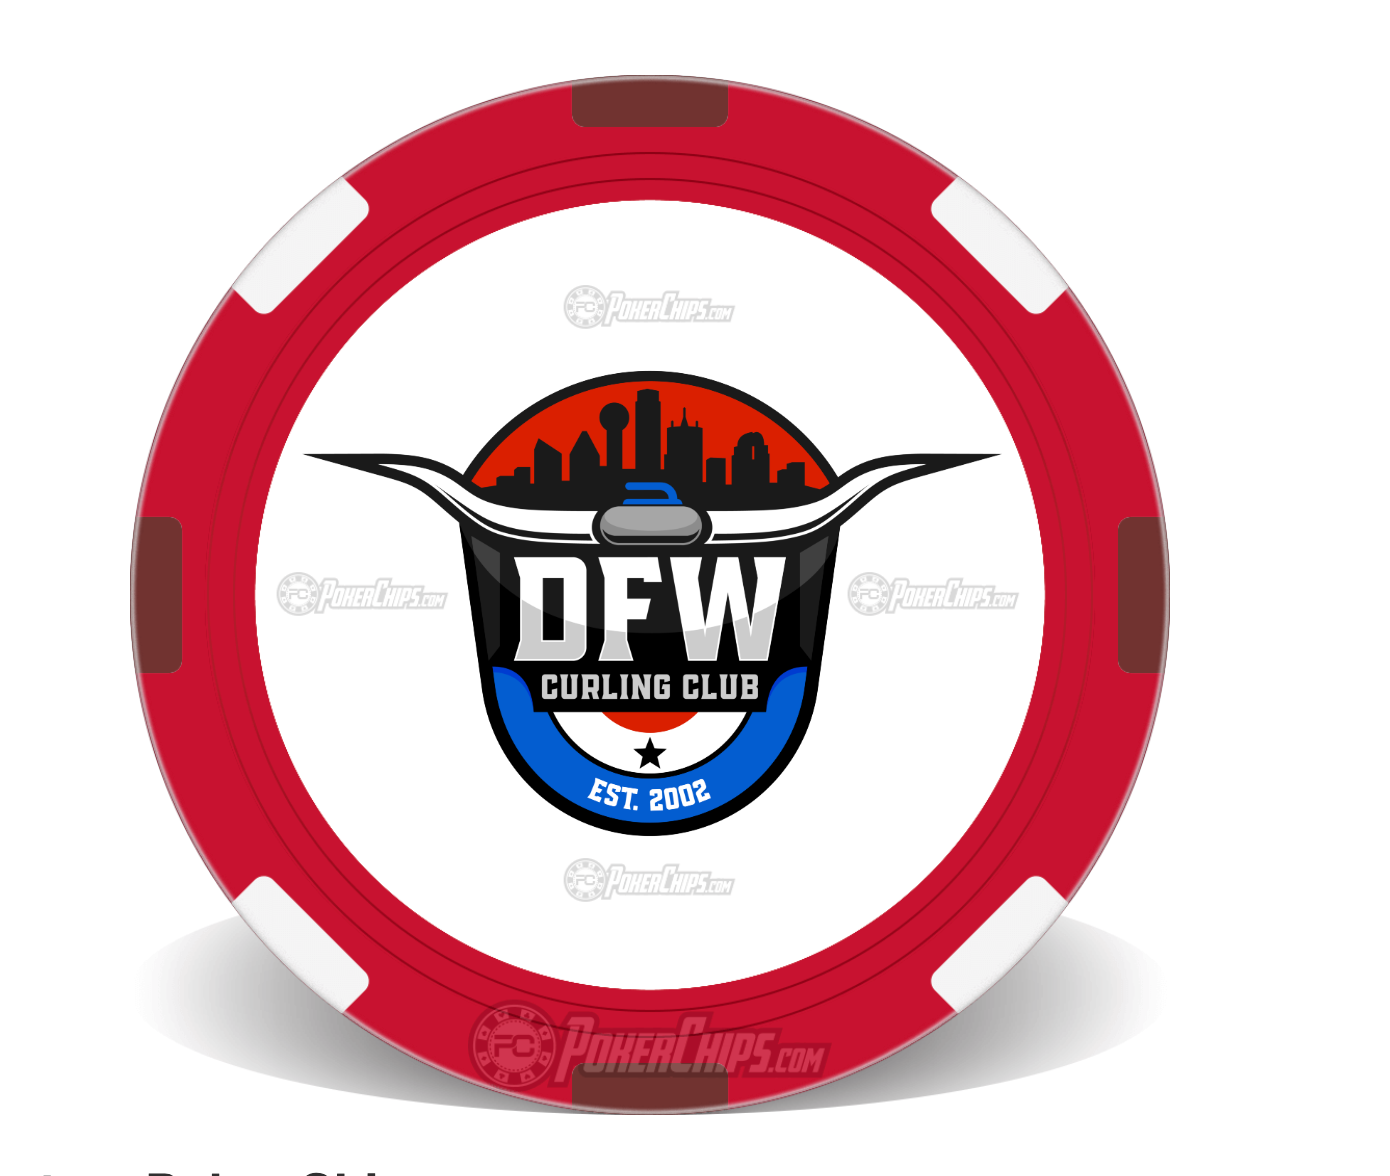 Steers & Beers/DFW Curling Club Logo Poker Chip Set of 5